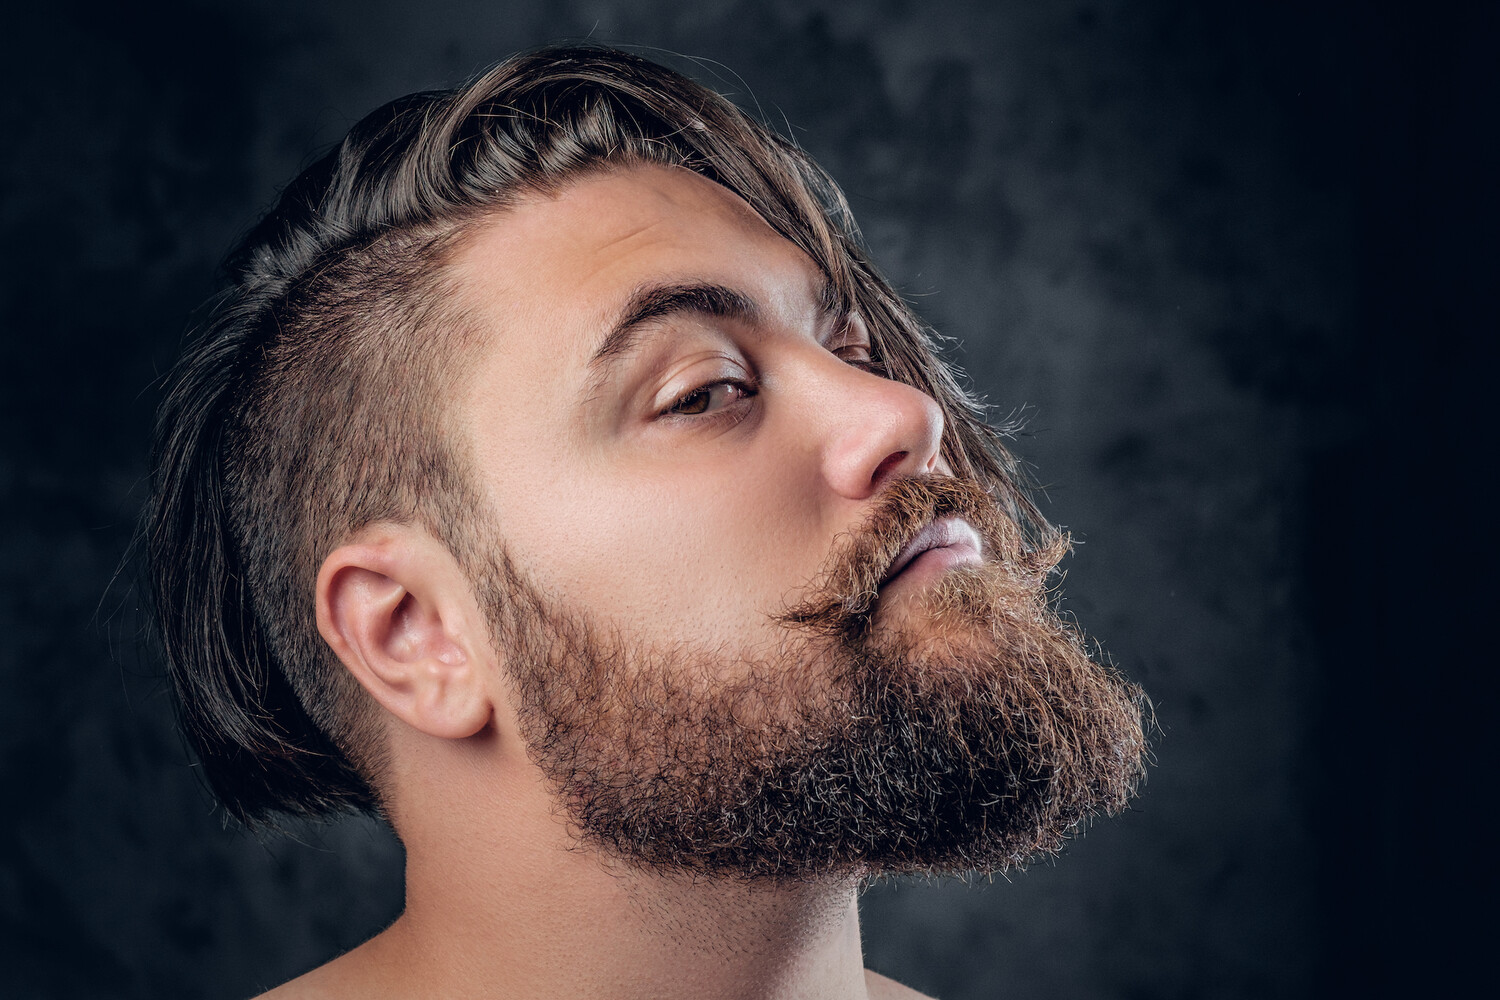 Частое бритье, красный перец, уколы: есть ли идеальное средство для роста  бороды - Газета.Ru